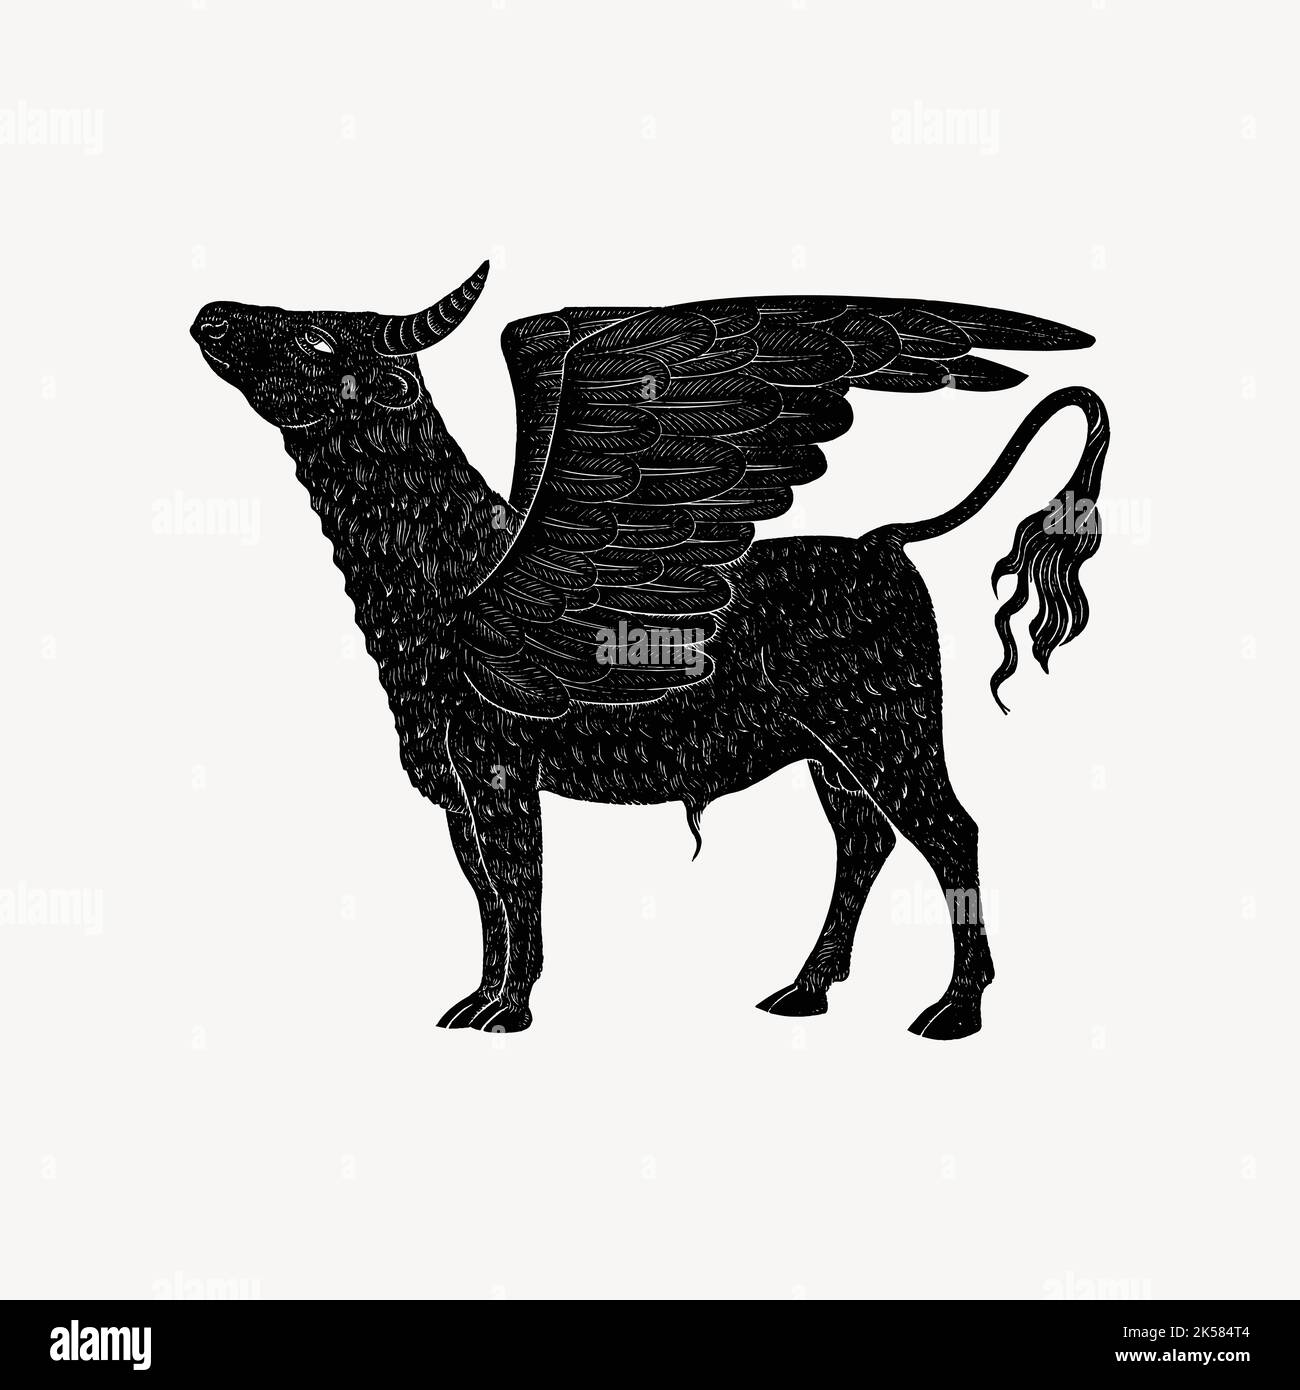 Крылатый бык. Крылатые быки Ассирии. Шеду Ассирия крылатый бык. Крылатые ассирийские быки Лувр. Ассирийский крылатый бык вектор.